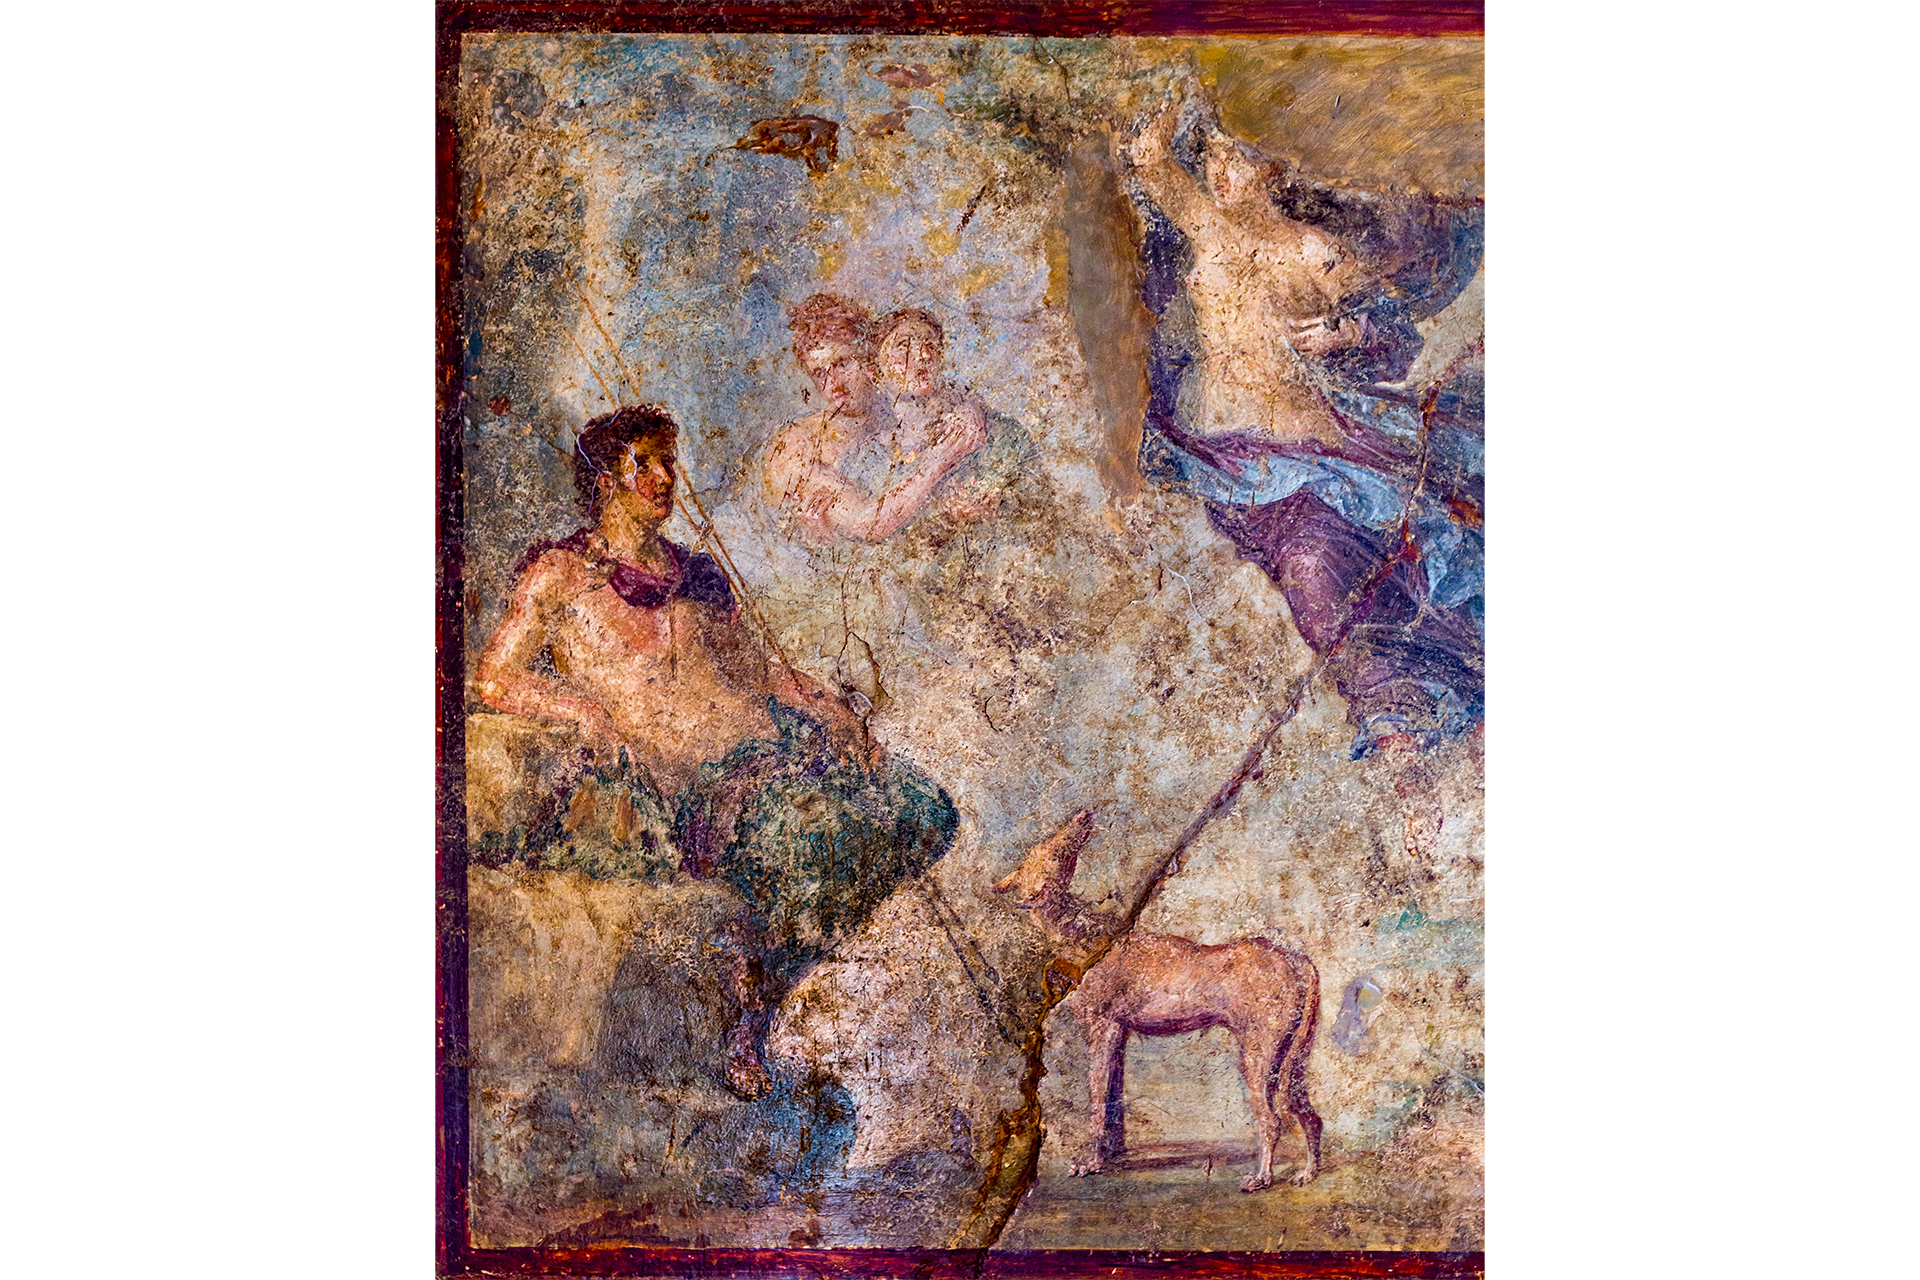 Эндимион смотрит на спускающуюся к нему Селену. Античная фреска из Помпей